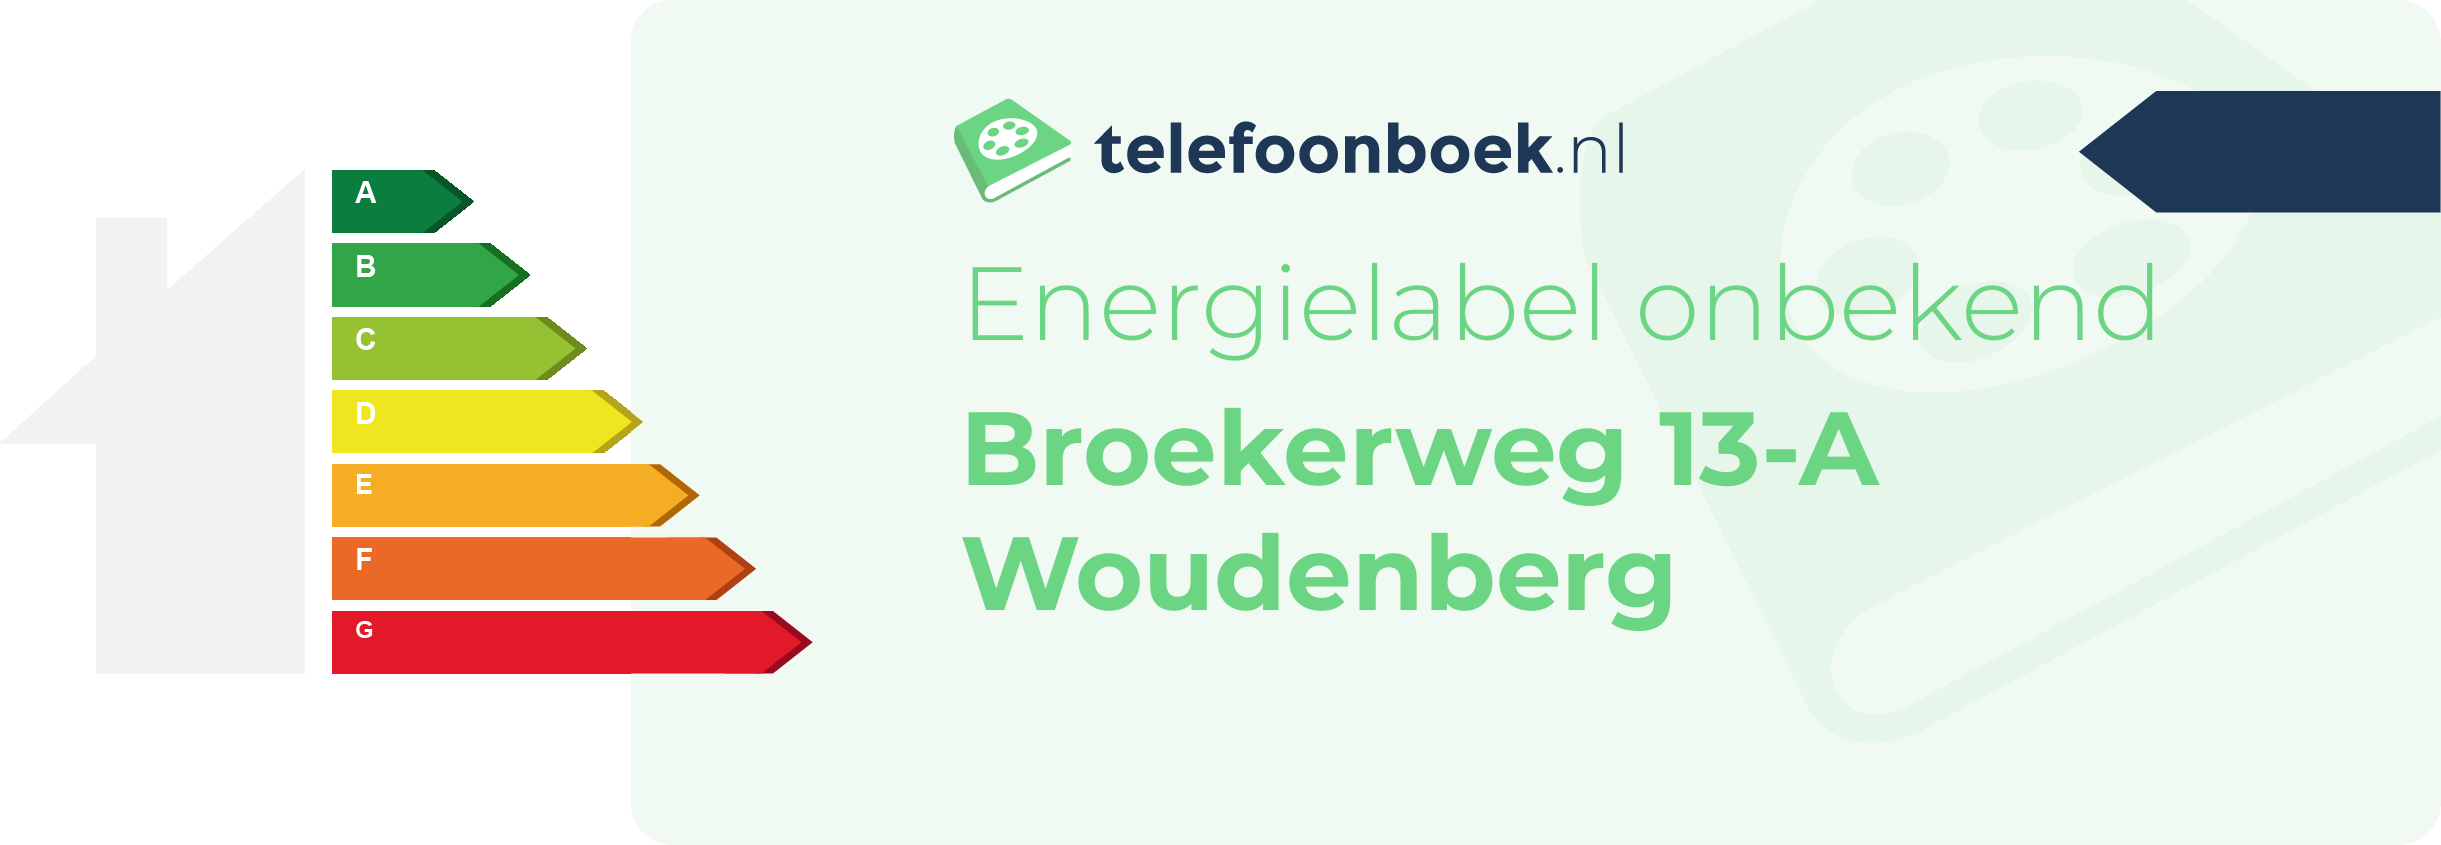 Energielabel Broekerweg 13-A Woudenberg